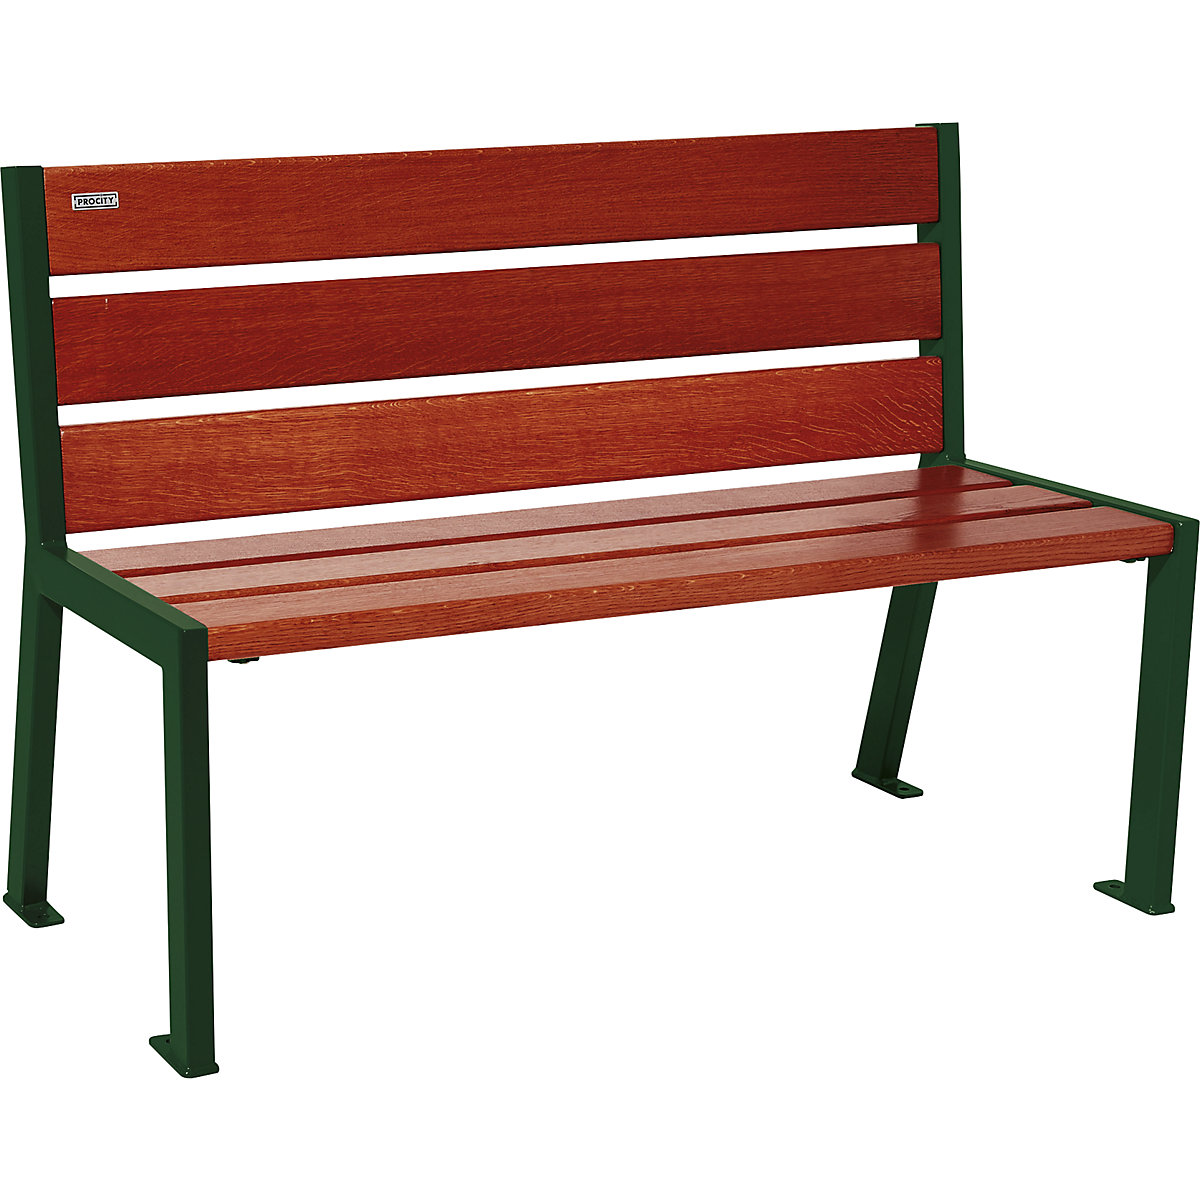 Sitzbank SILAOS® aus Holz PROCITY, mit Rückenlehne, Länge 1200 mm, moosgrün RAL 6005, mahagoni-5